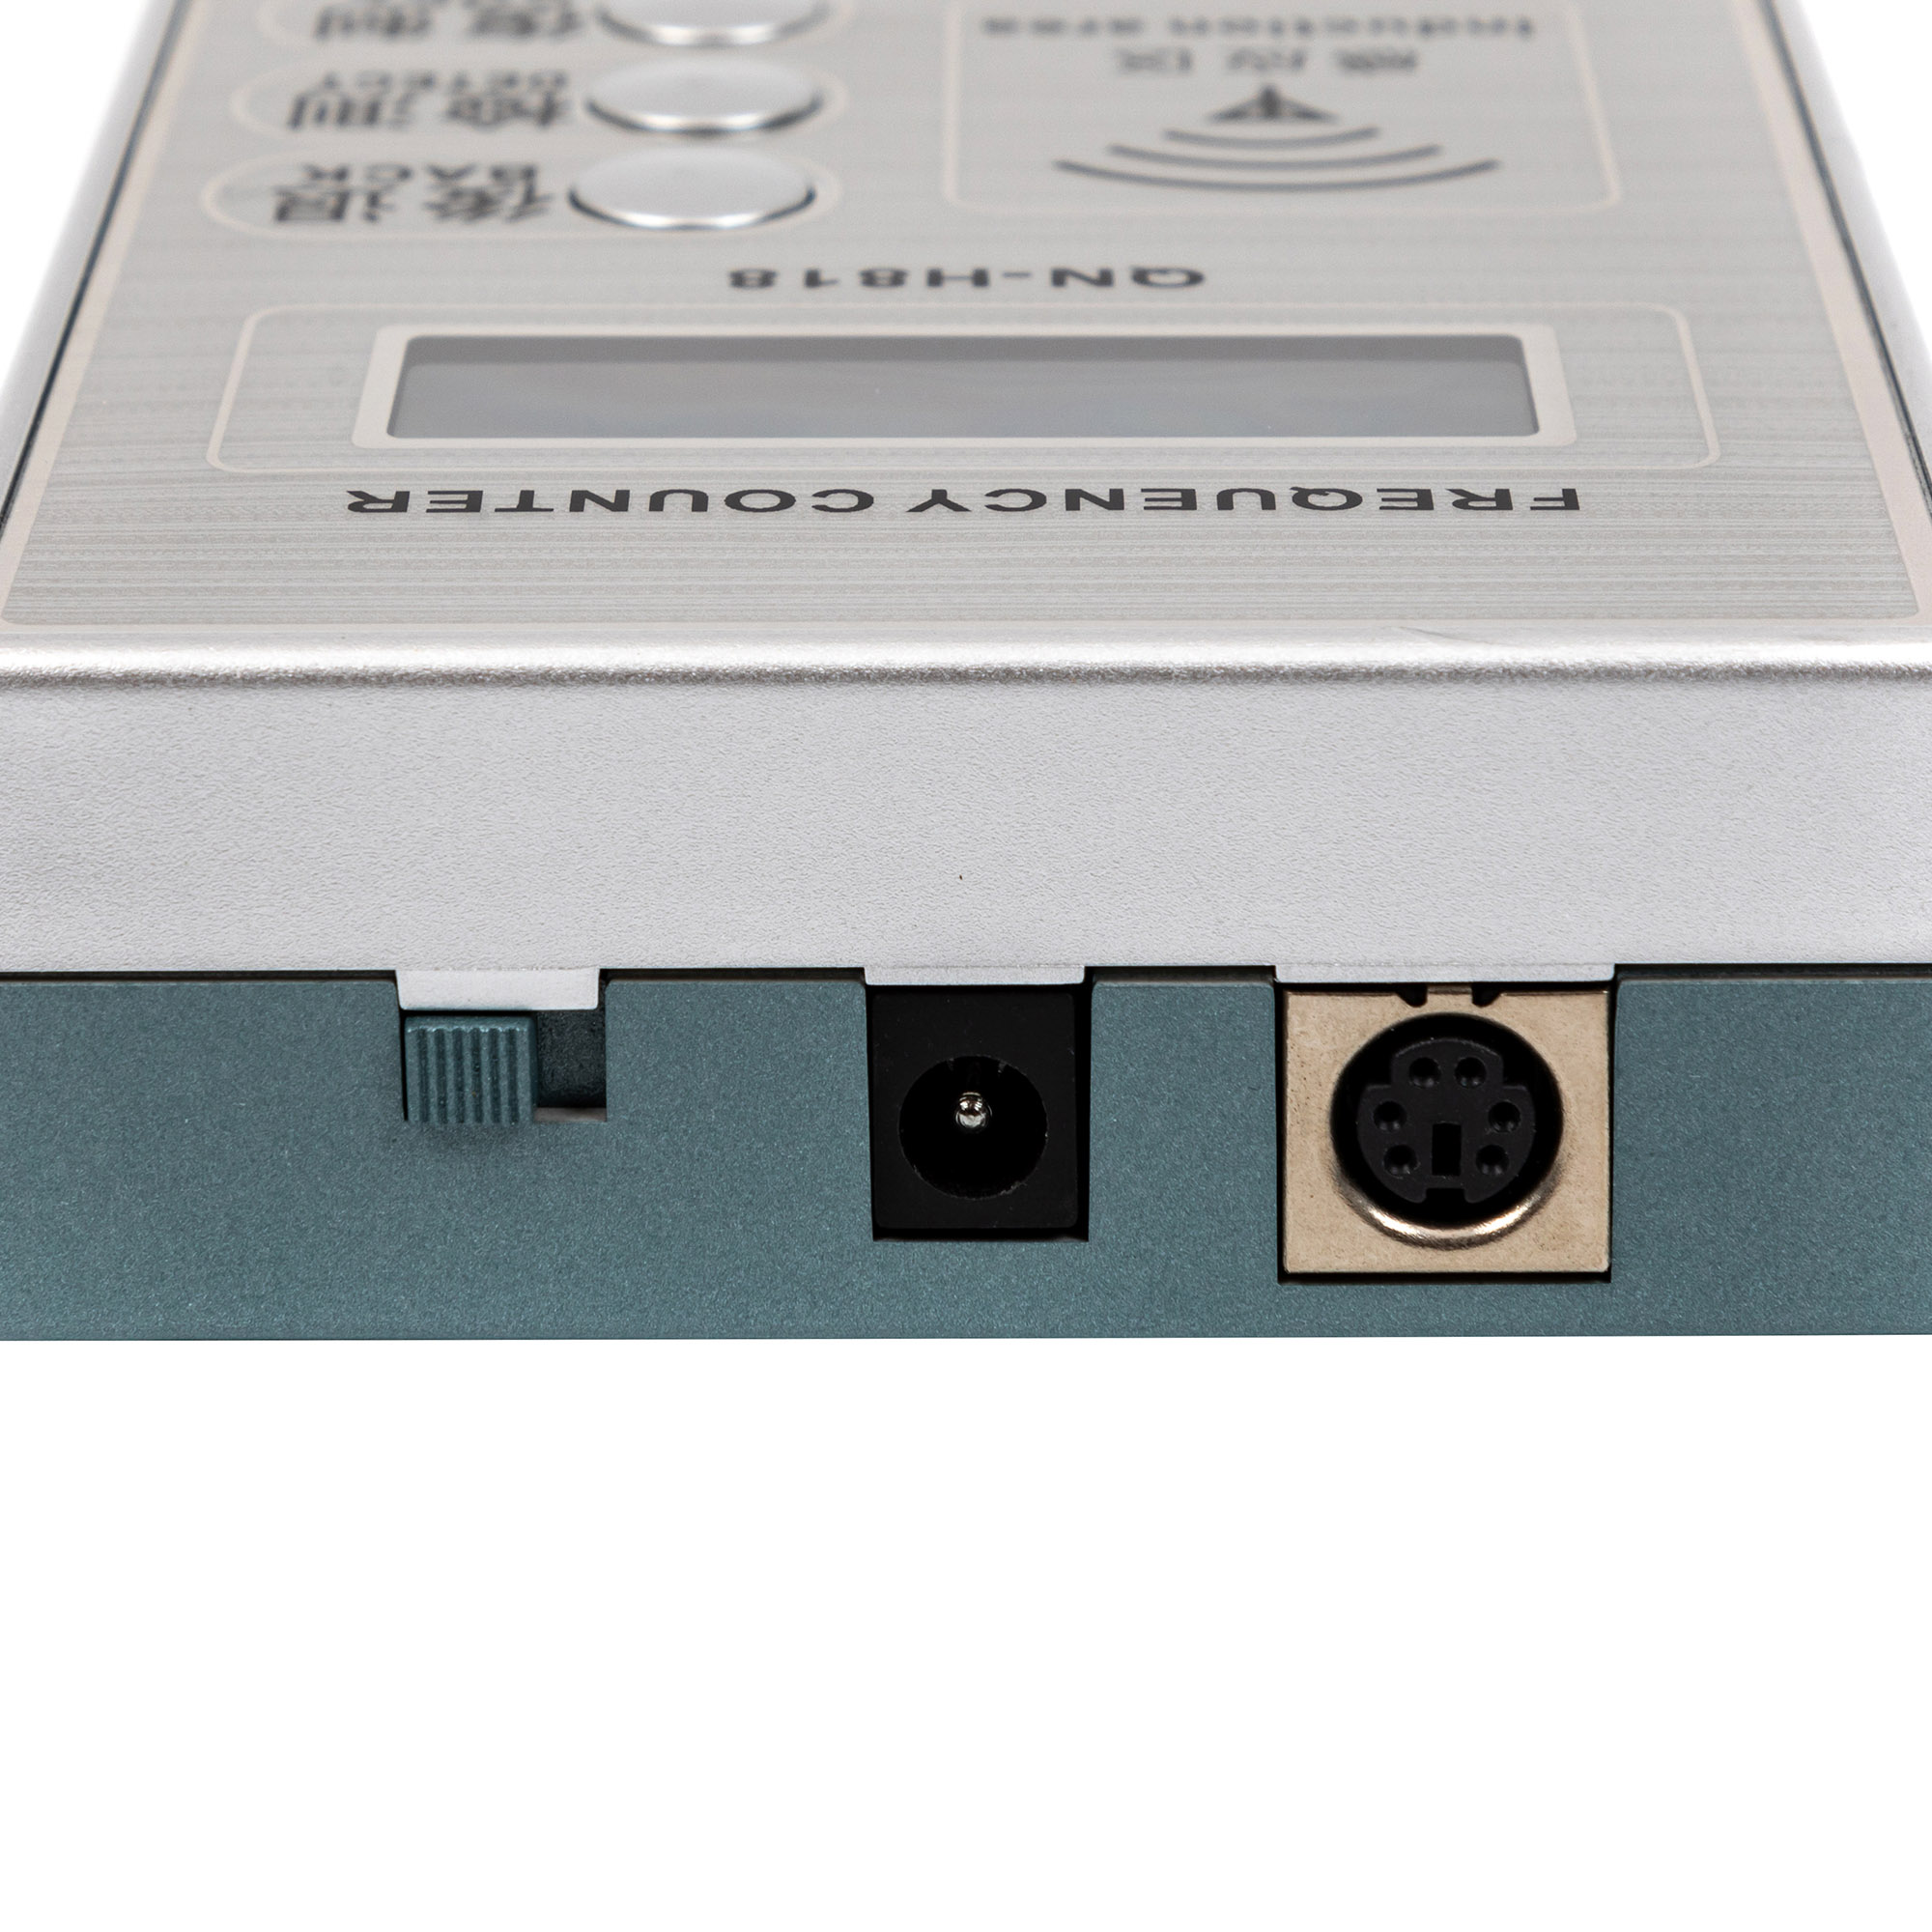 QN-H818 Easy operate mini counter digital duplicator machine